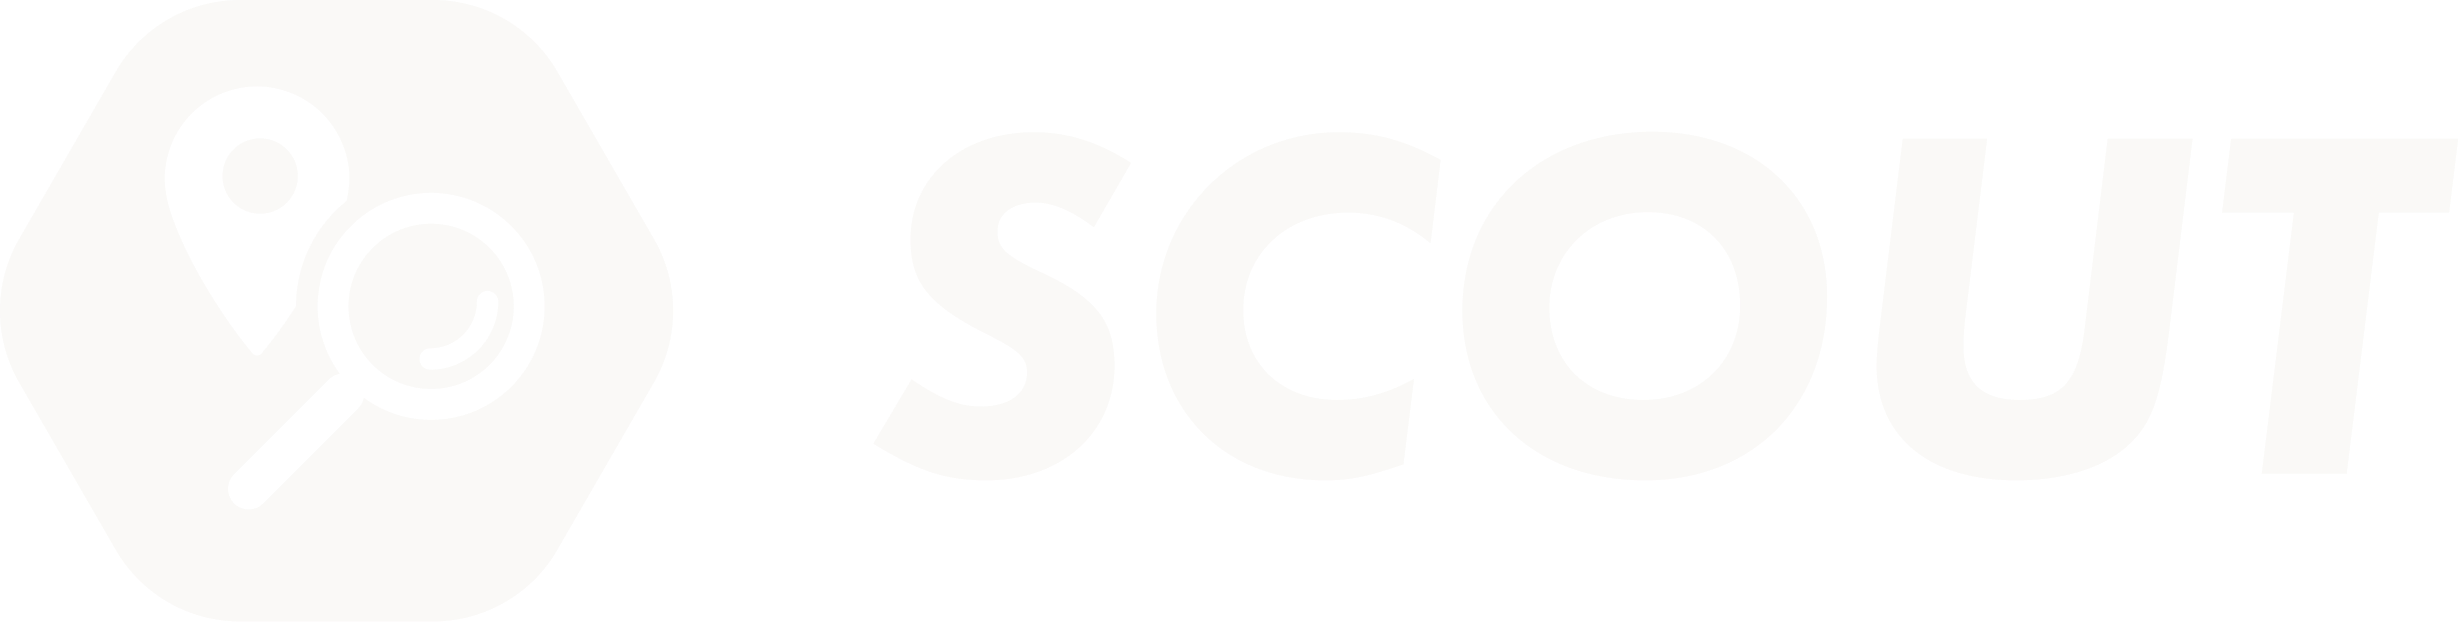 logo-scout-white.png